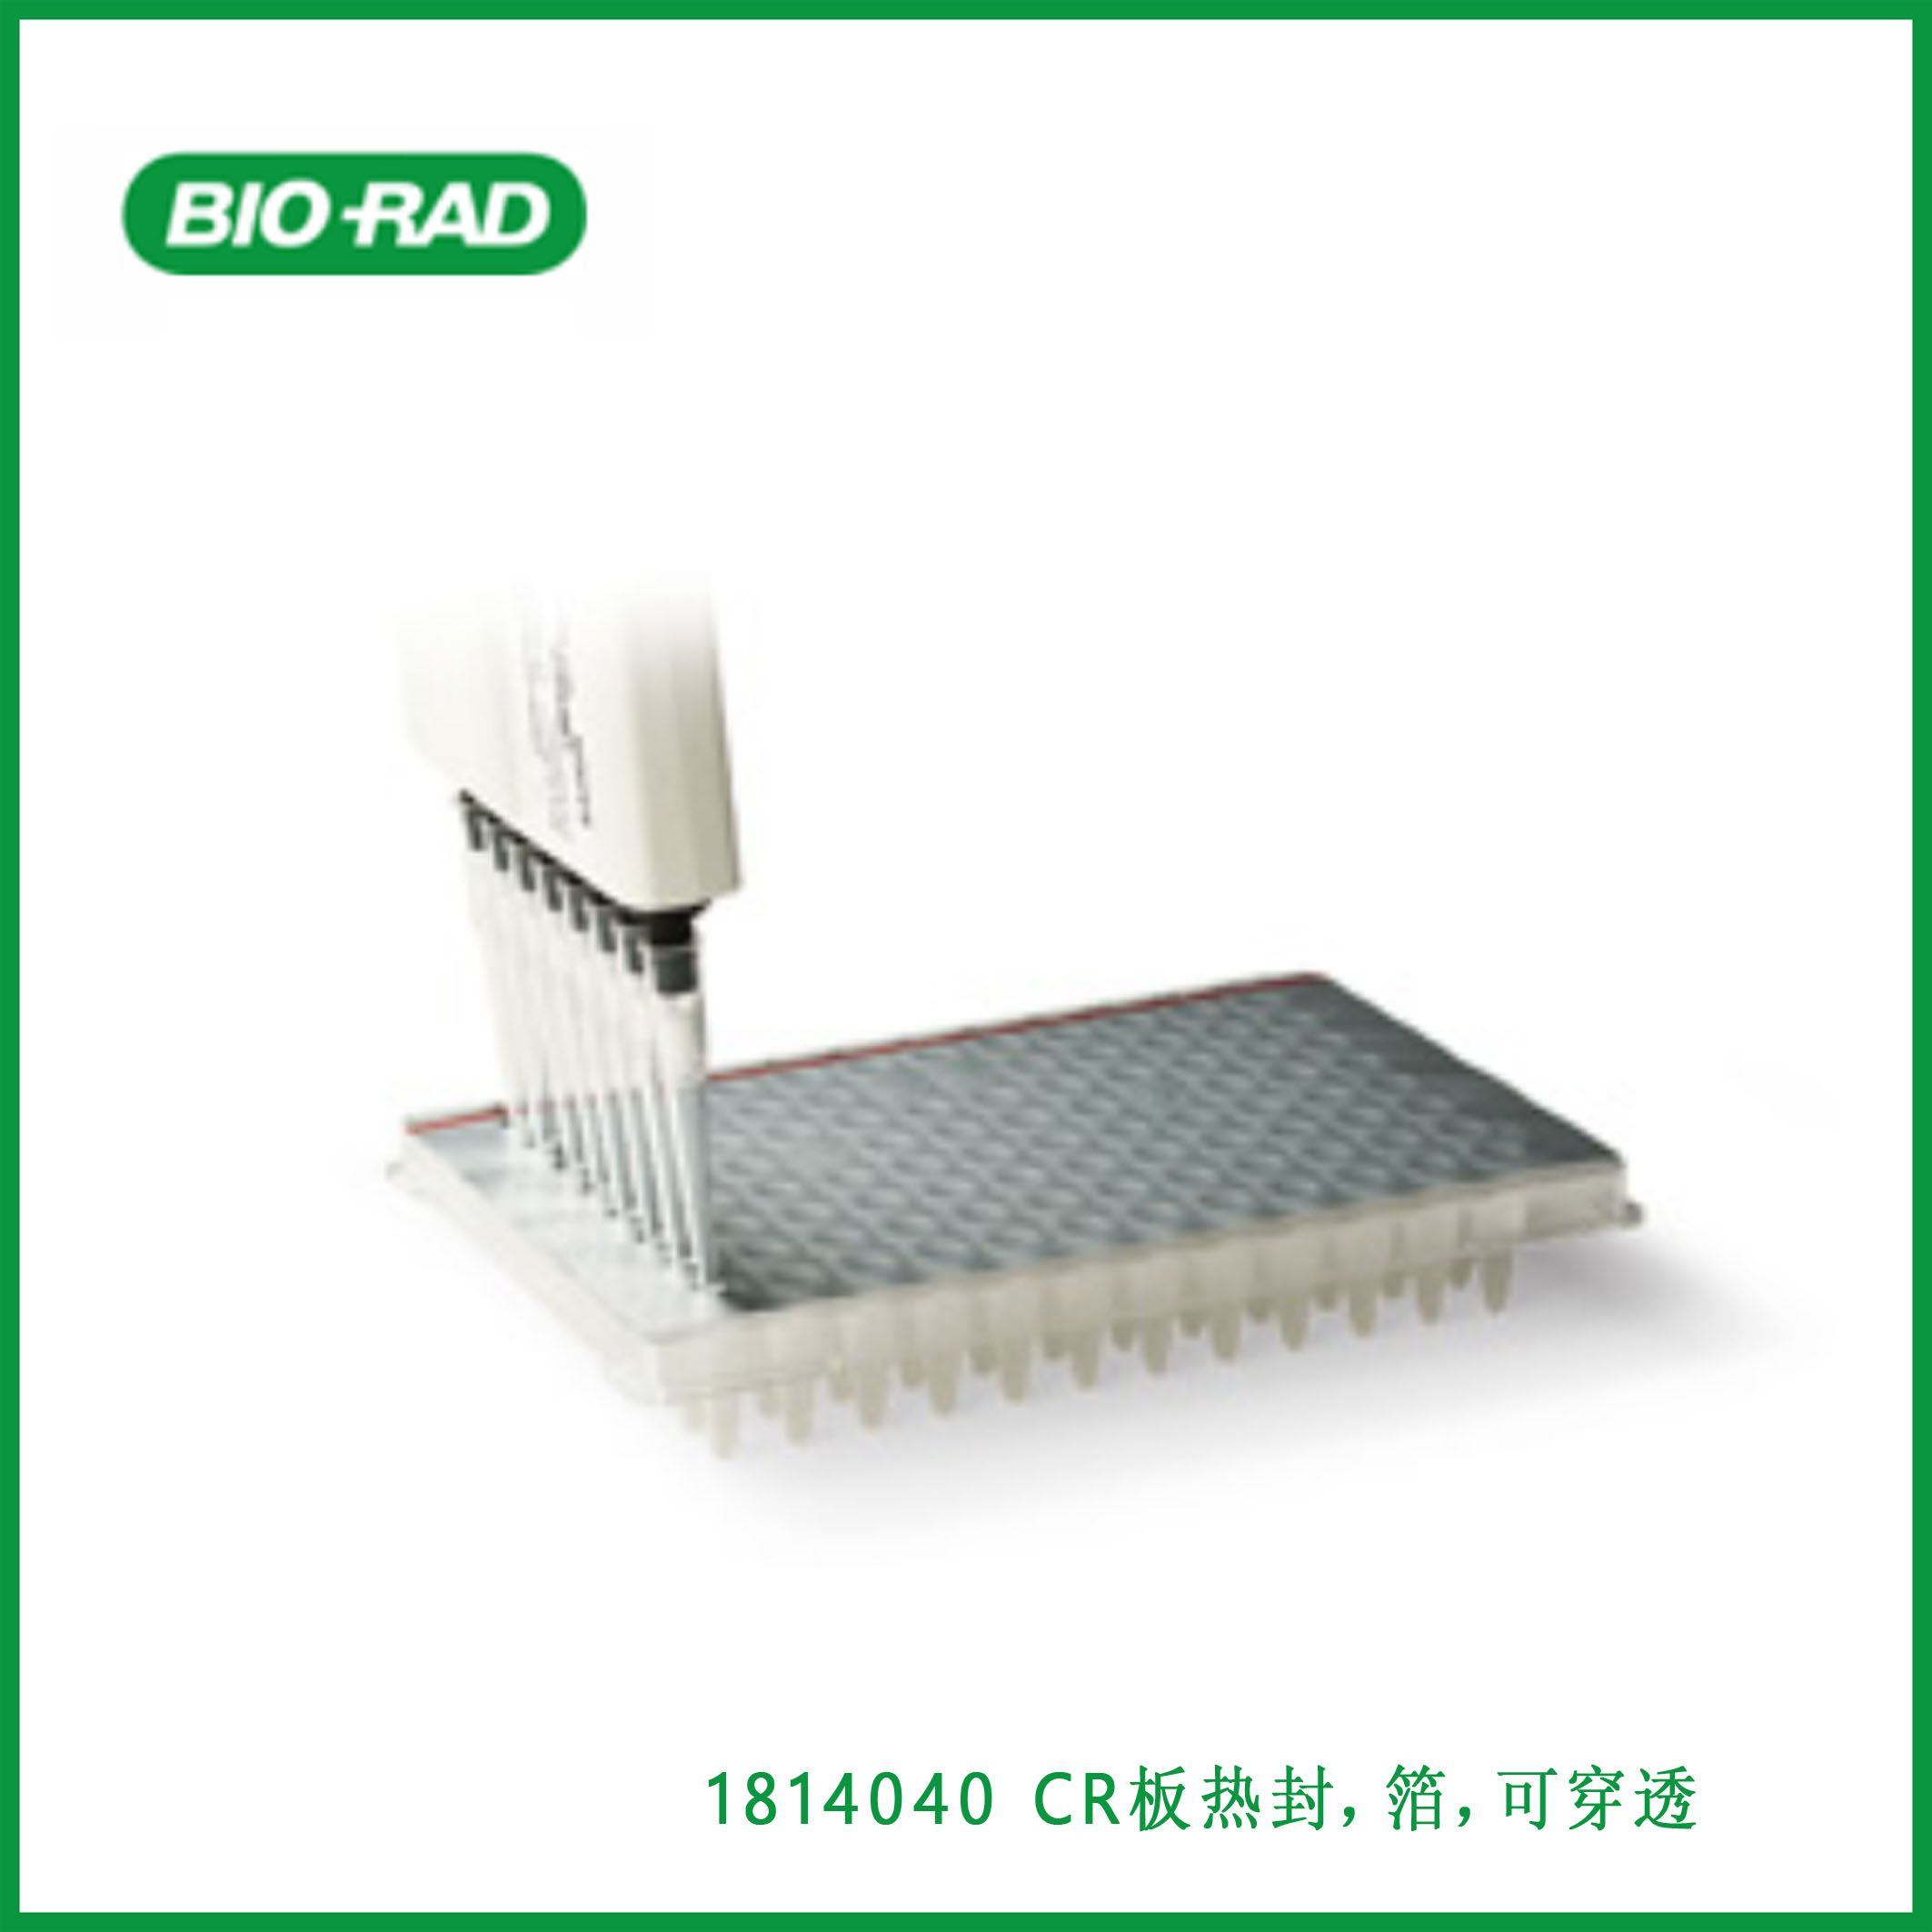 伯乐Bio-Rad1814040 PCR Plate Heat Seal, foil, pierceable，PCR板热封，箔，可穿透,现货